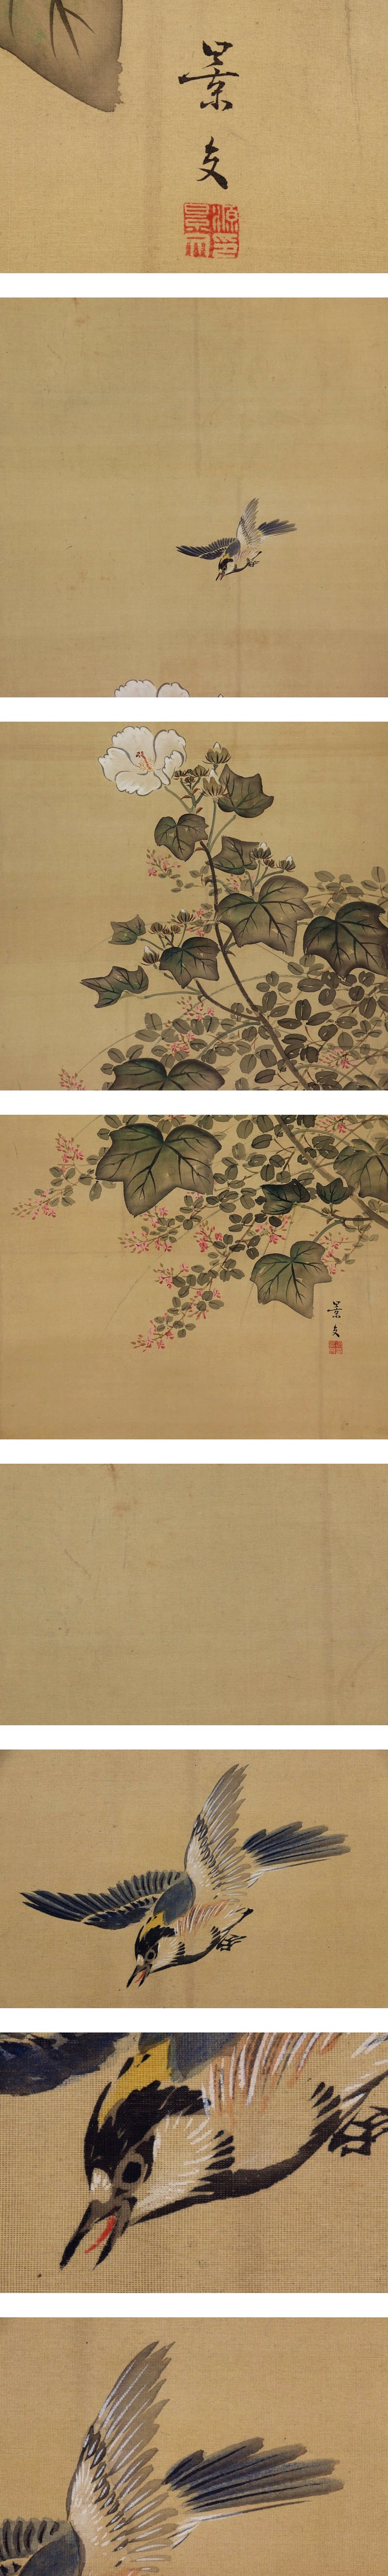 【日本特売】松村景文◆絹本◆掛軸 w10087 花鳥、鳥獣